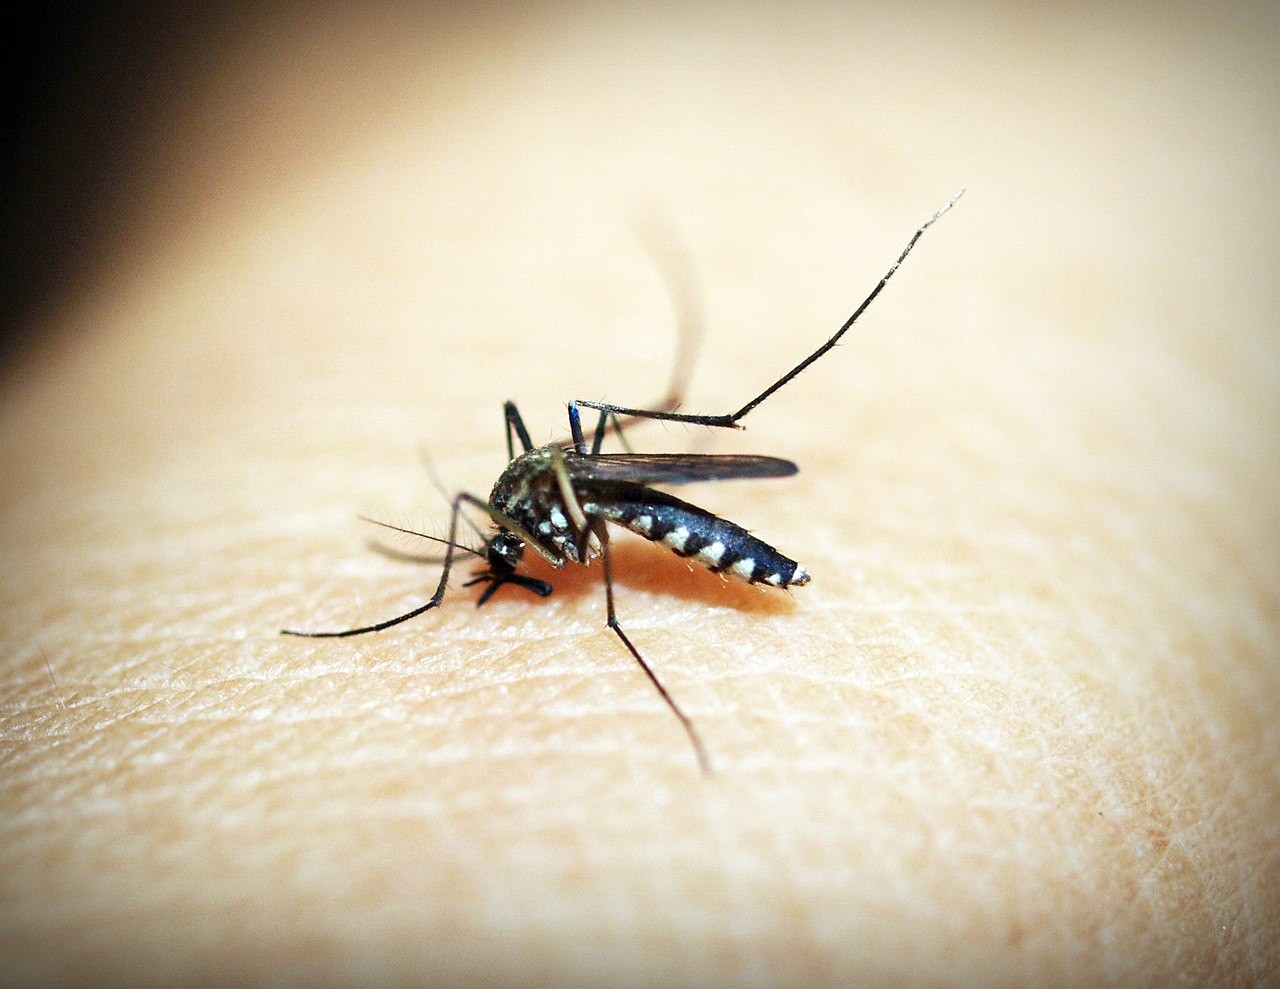 Mosquitos Haemagogus foram identificados como os principais transmissores de febre amarela na epidemia entre 2017 e 2019 no Brasil (Foto: Pixabay)